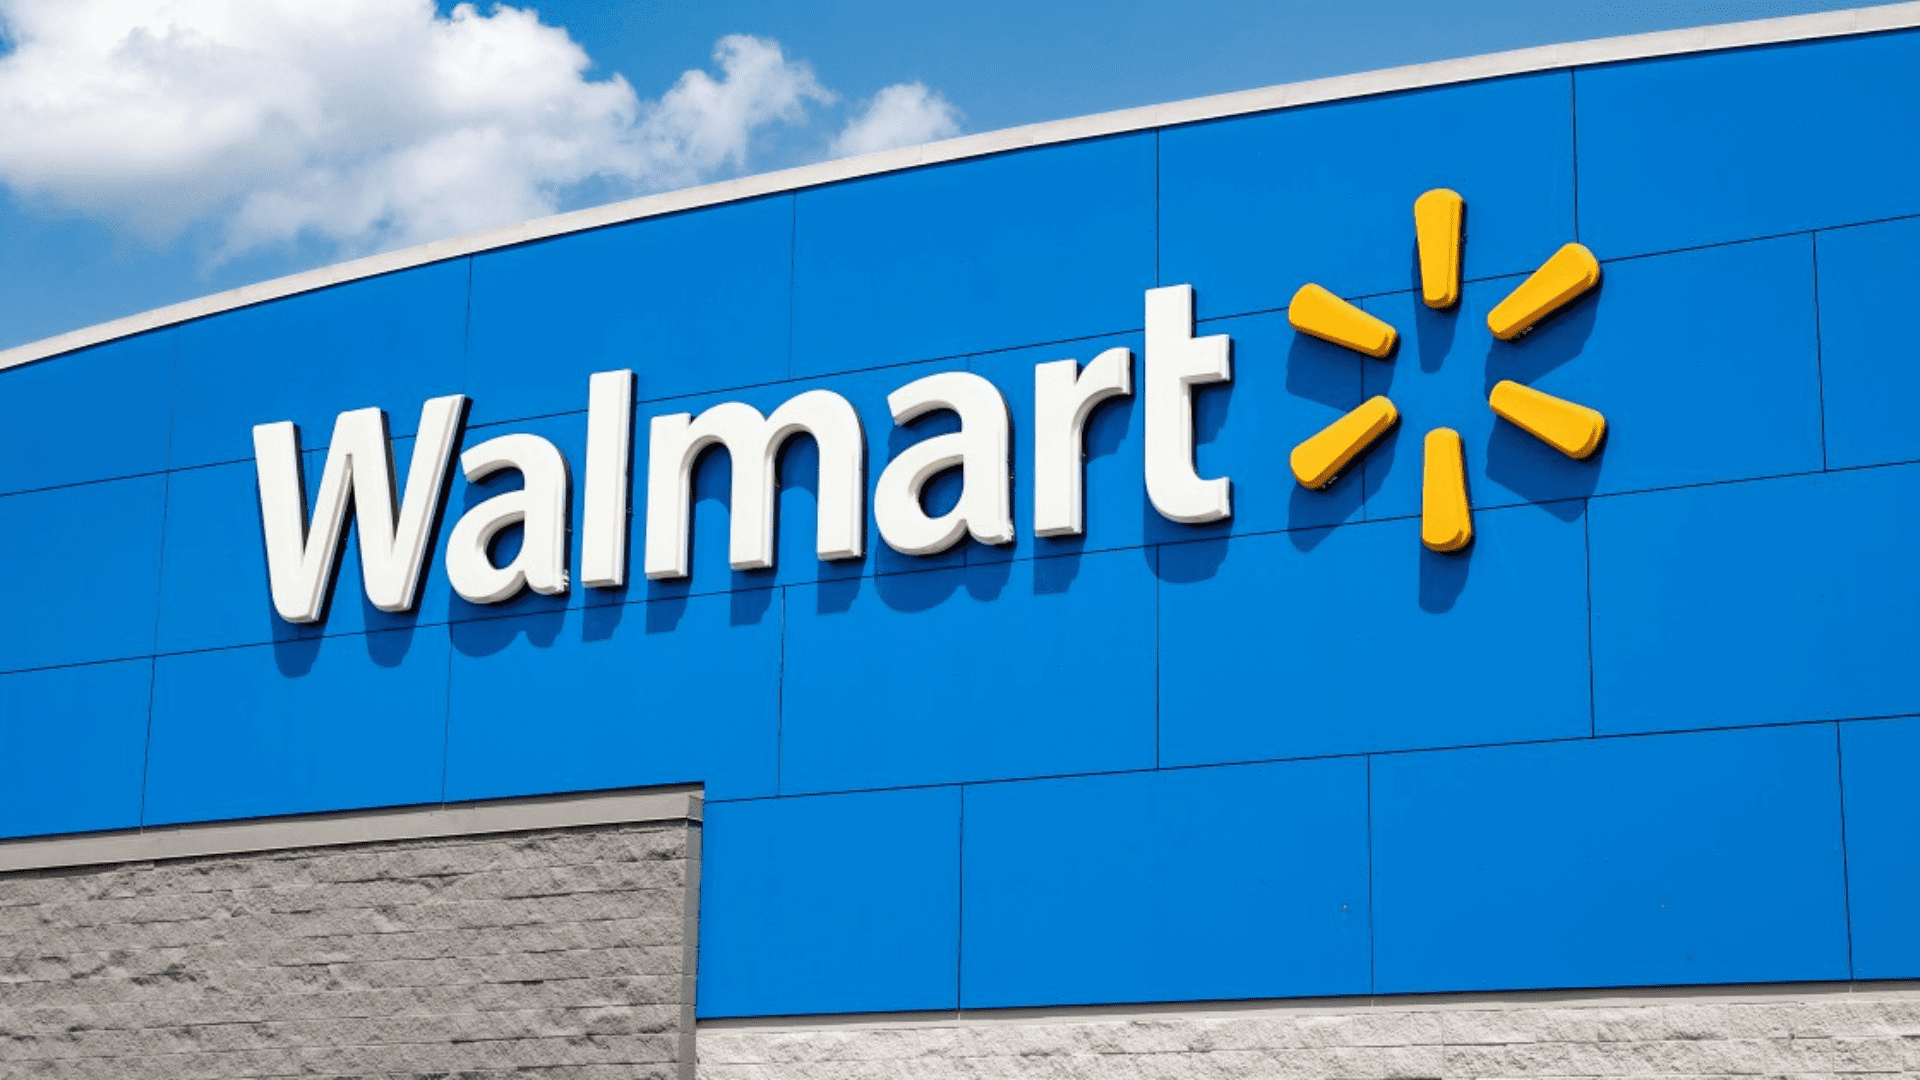 Walmart agrees to opioid settlement